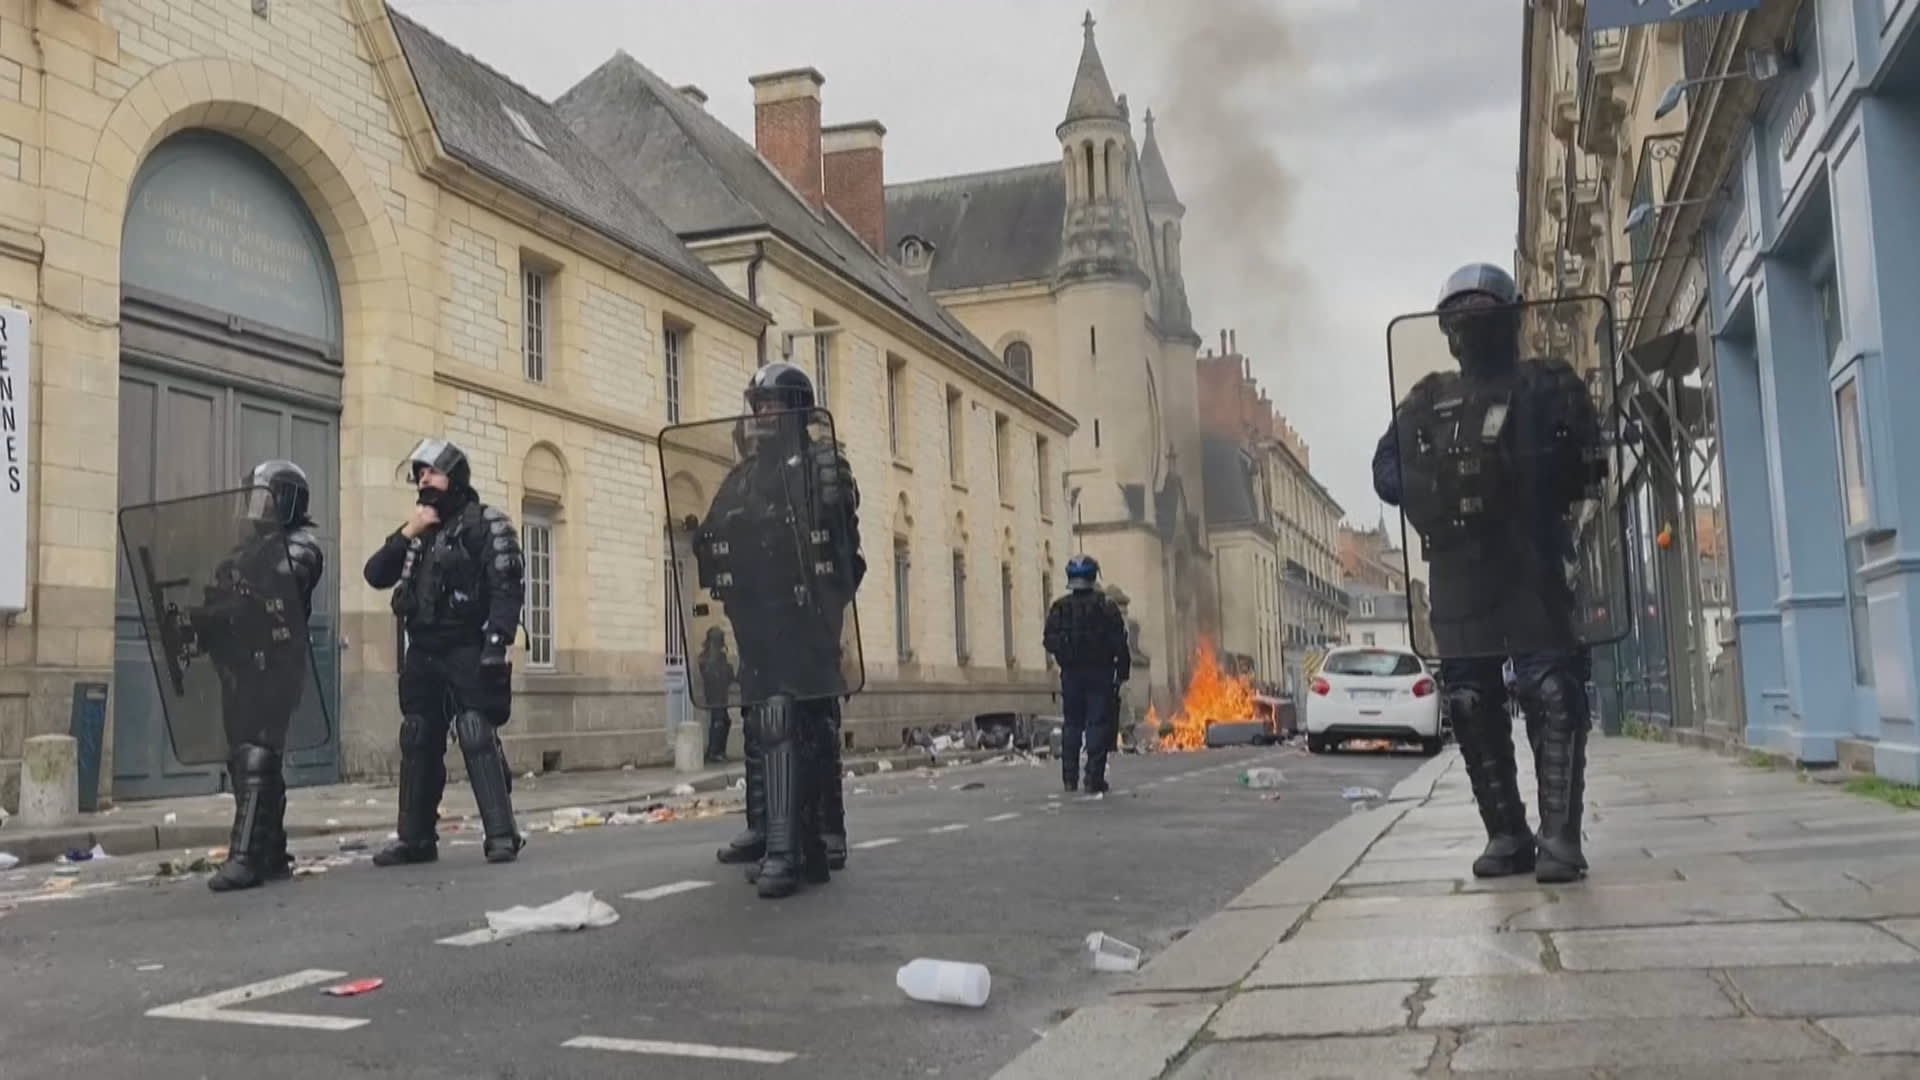 Protesty ve Francii již několik týdnů neberou konce.